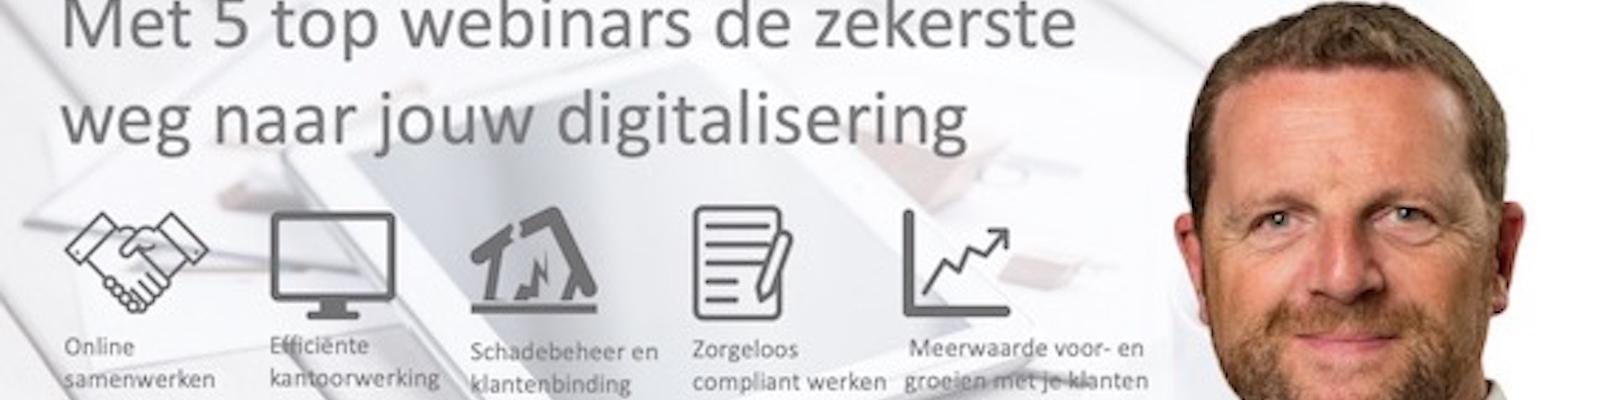 Webinar #Digitalbroker: Schadebeheer en klantenbinding